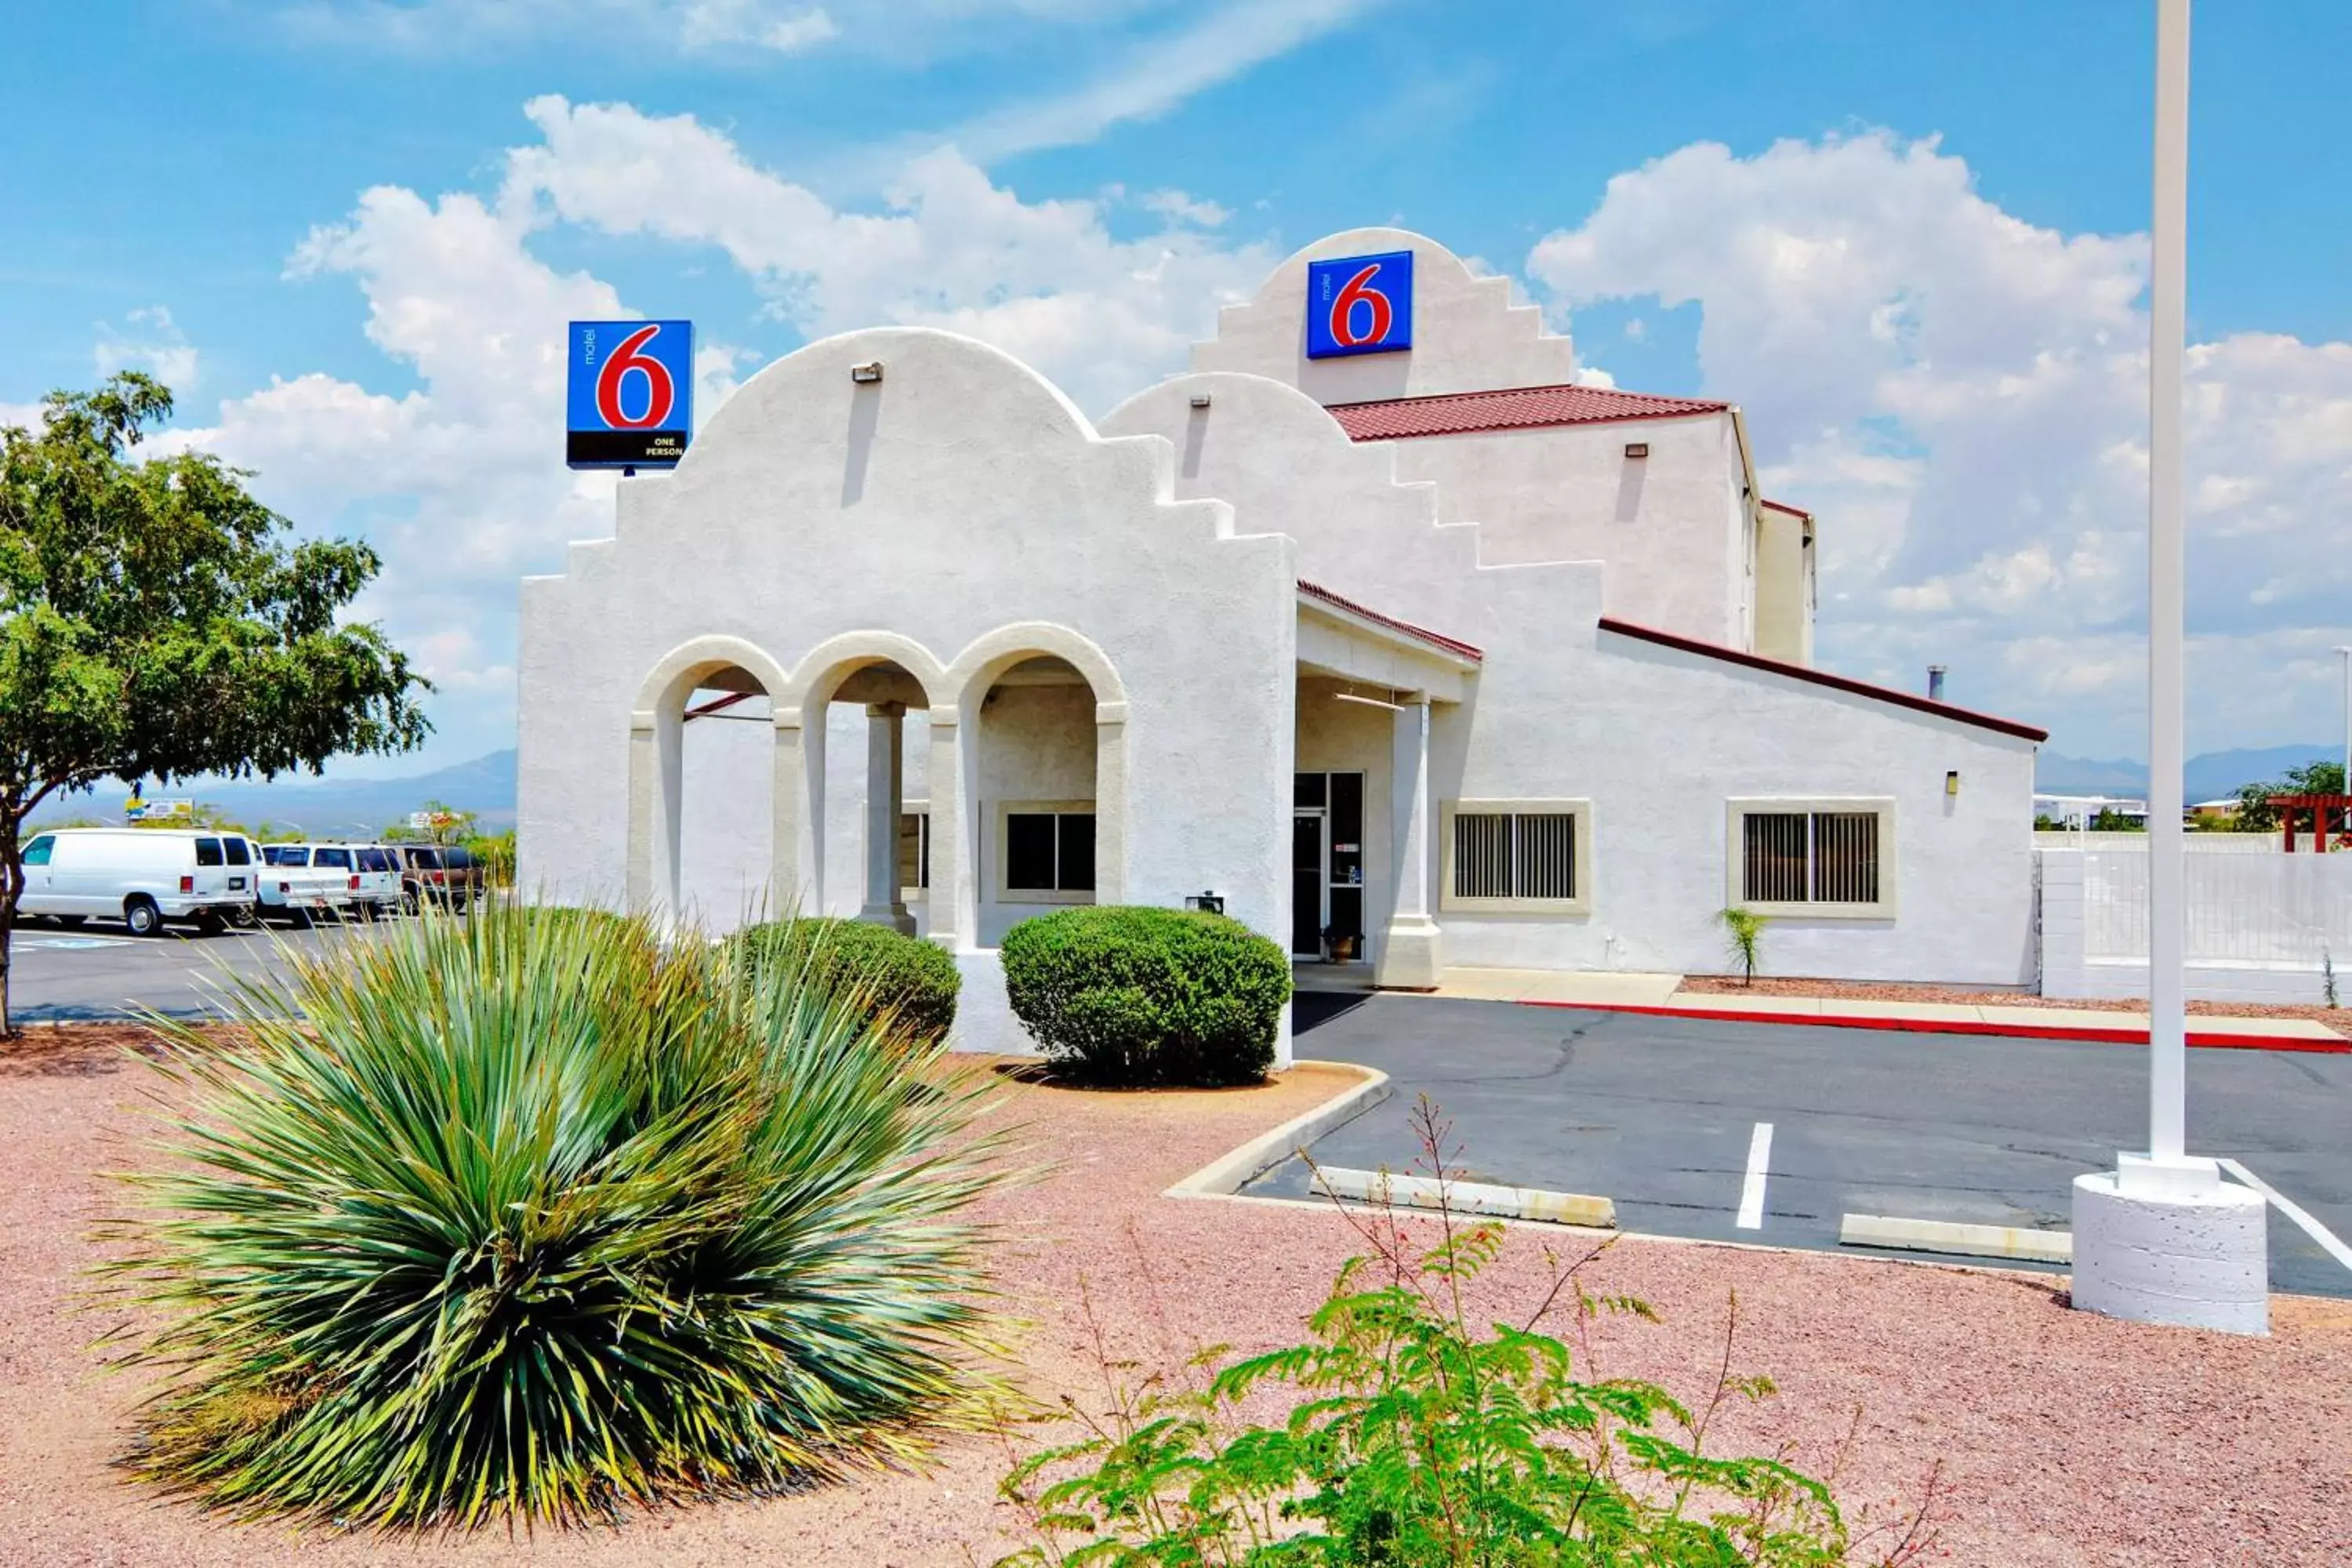 Property building, Facade/Entrance in Motel 6-Benson, AZ